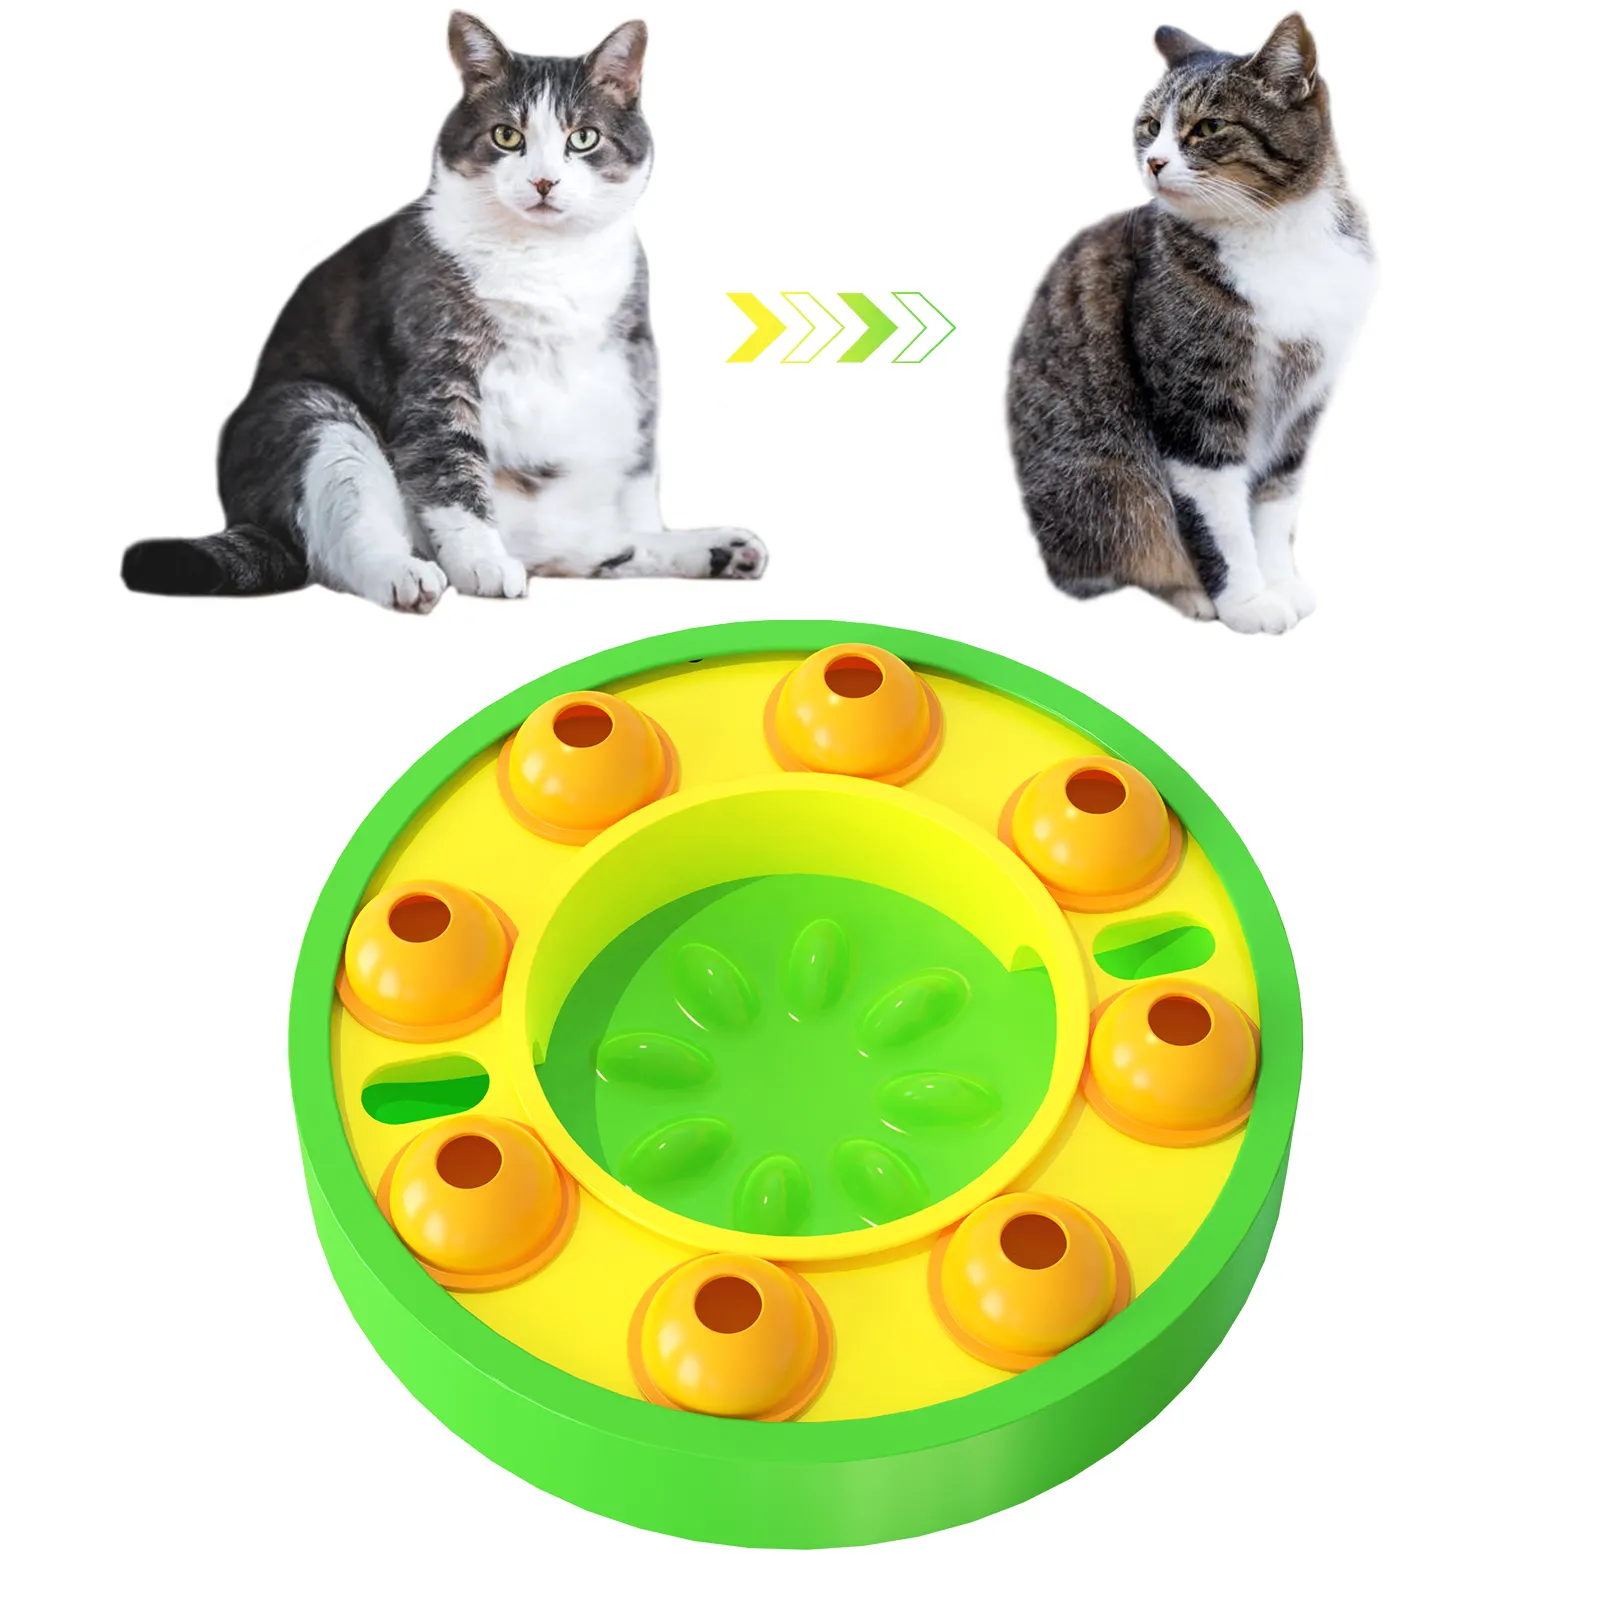 नया डॉग स्लो ईटिंग पपी स्मार्ट इंटरैक्टिव ट्रीट ट्विस्टर गेम प्लेट पहेली खिलौने बिल्लियों और कुत्तों के लिए